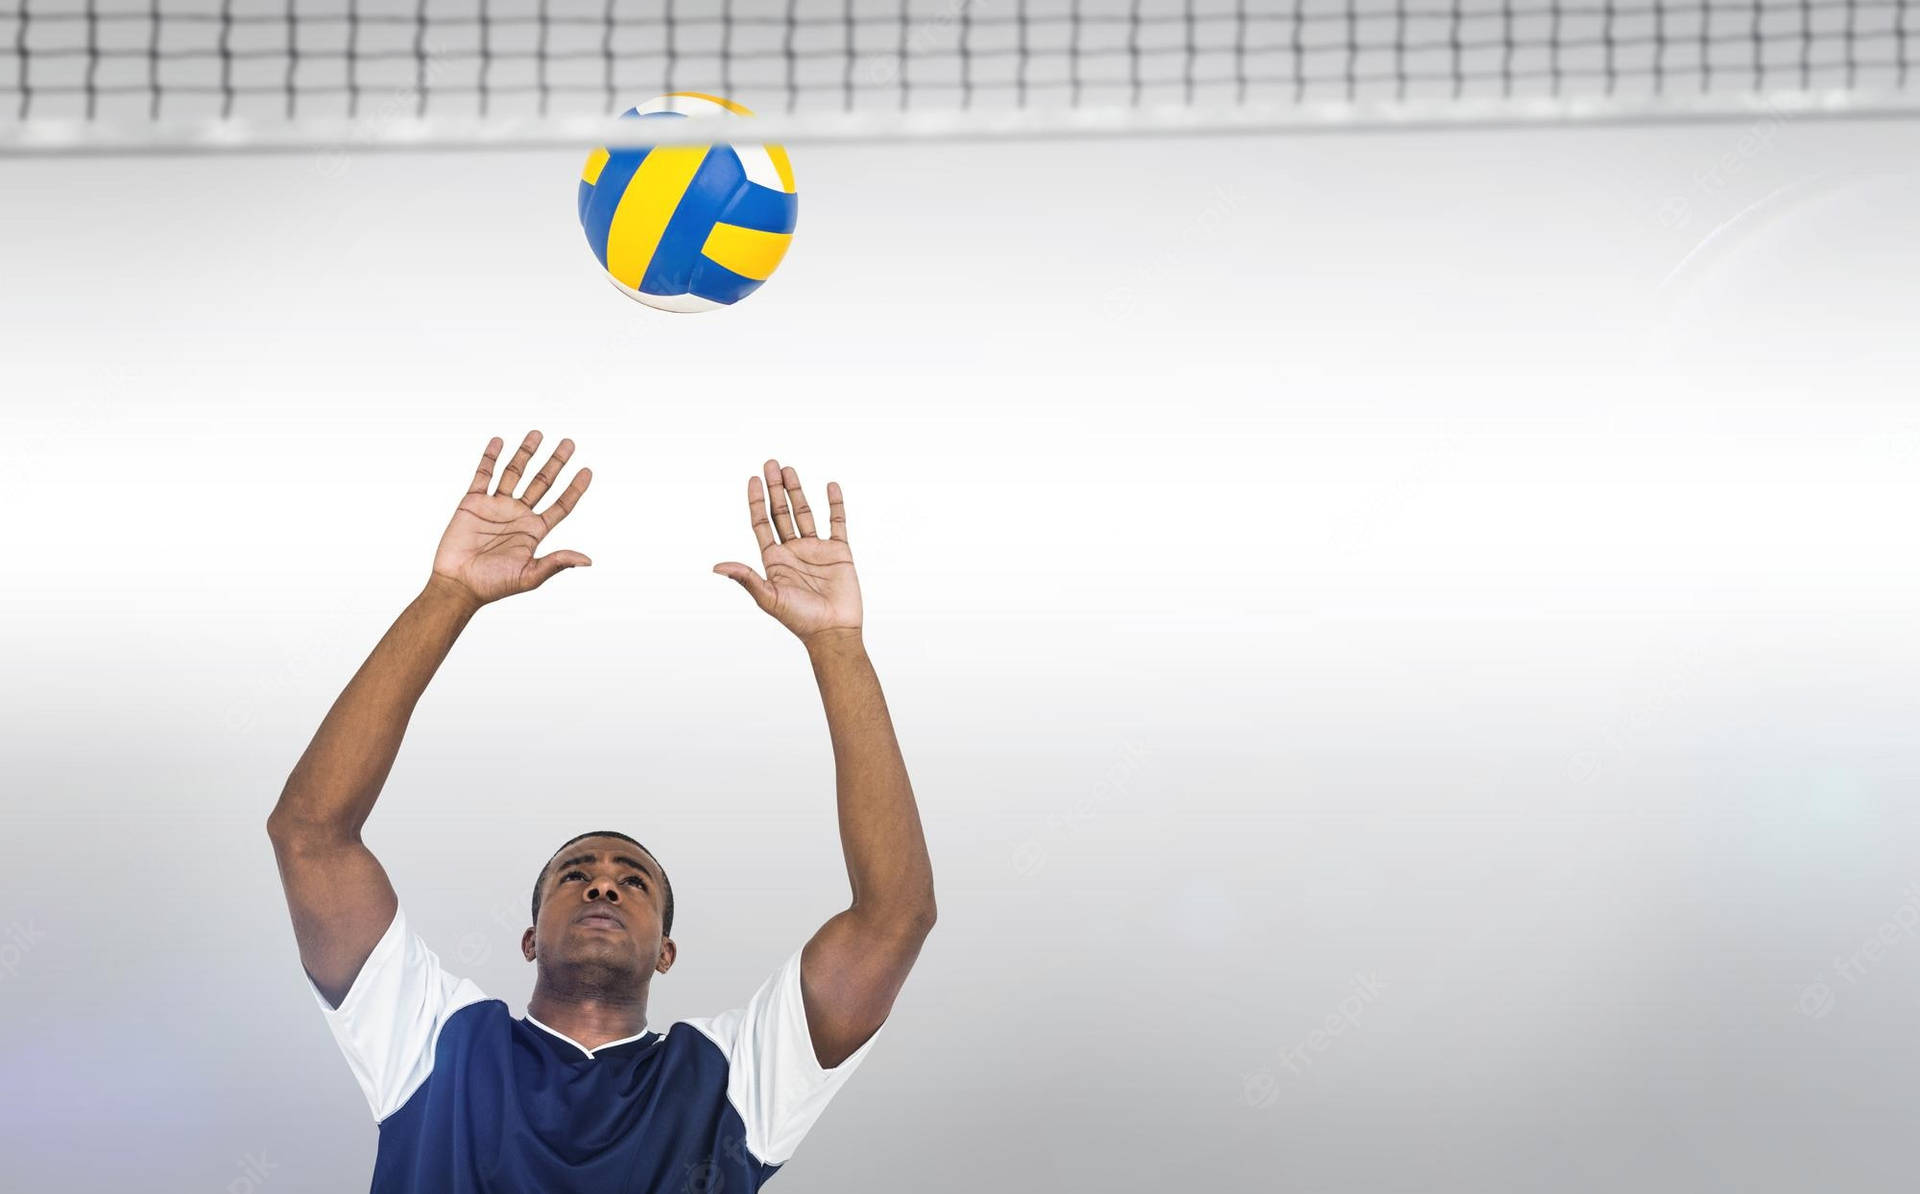 Højteknologisk volleyball for den moderne alder. Wallpaper